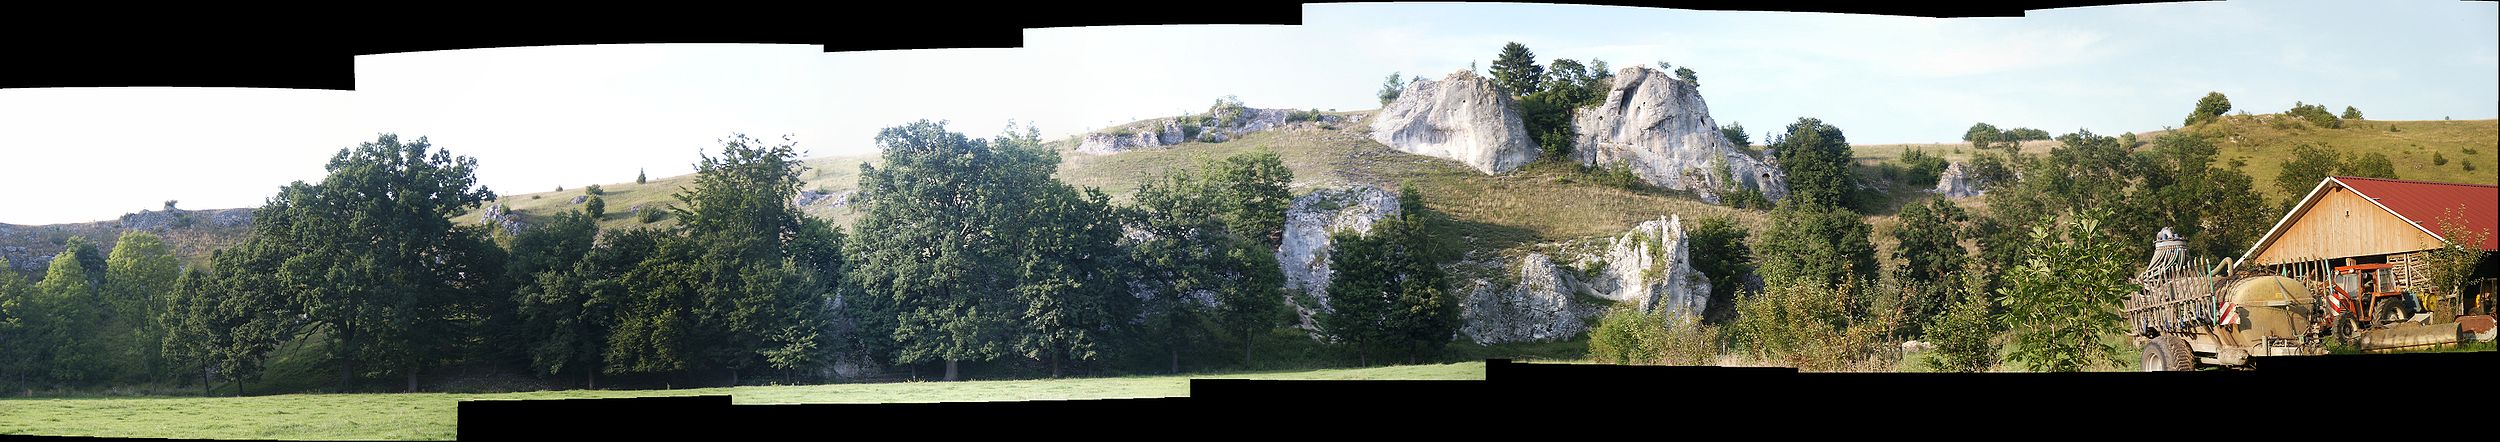 Panoramaaufnahme unterhalb der Eselsburg